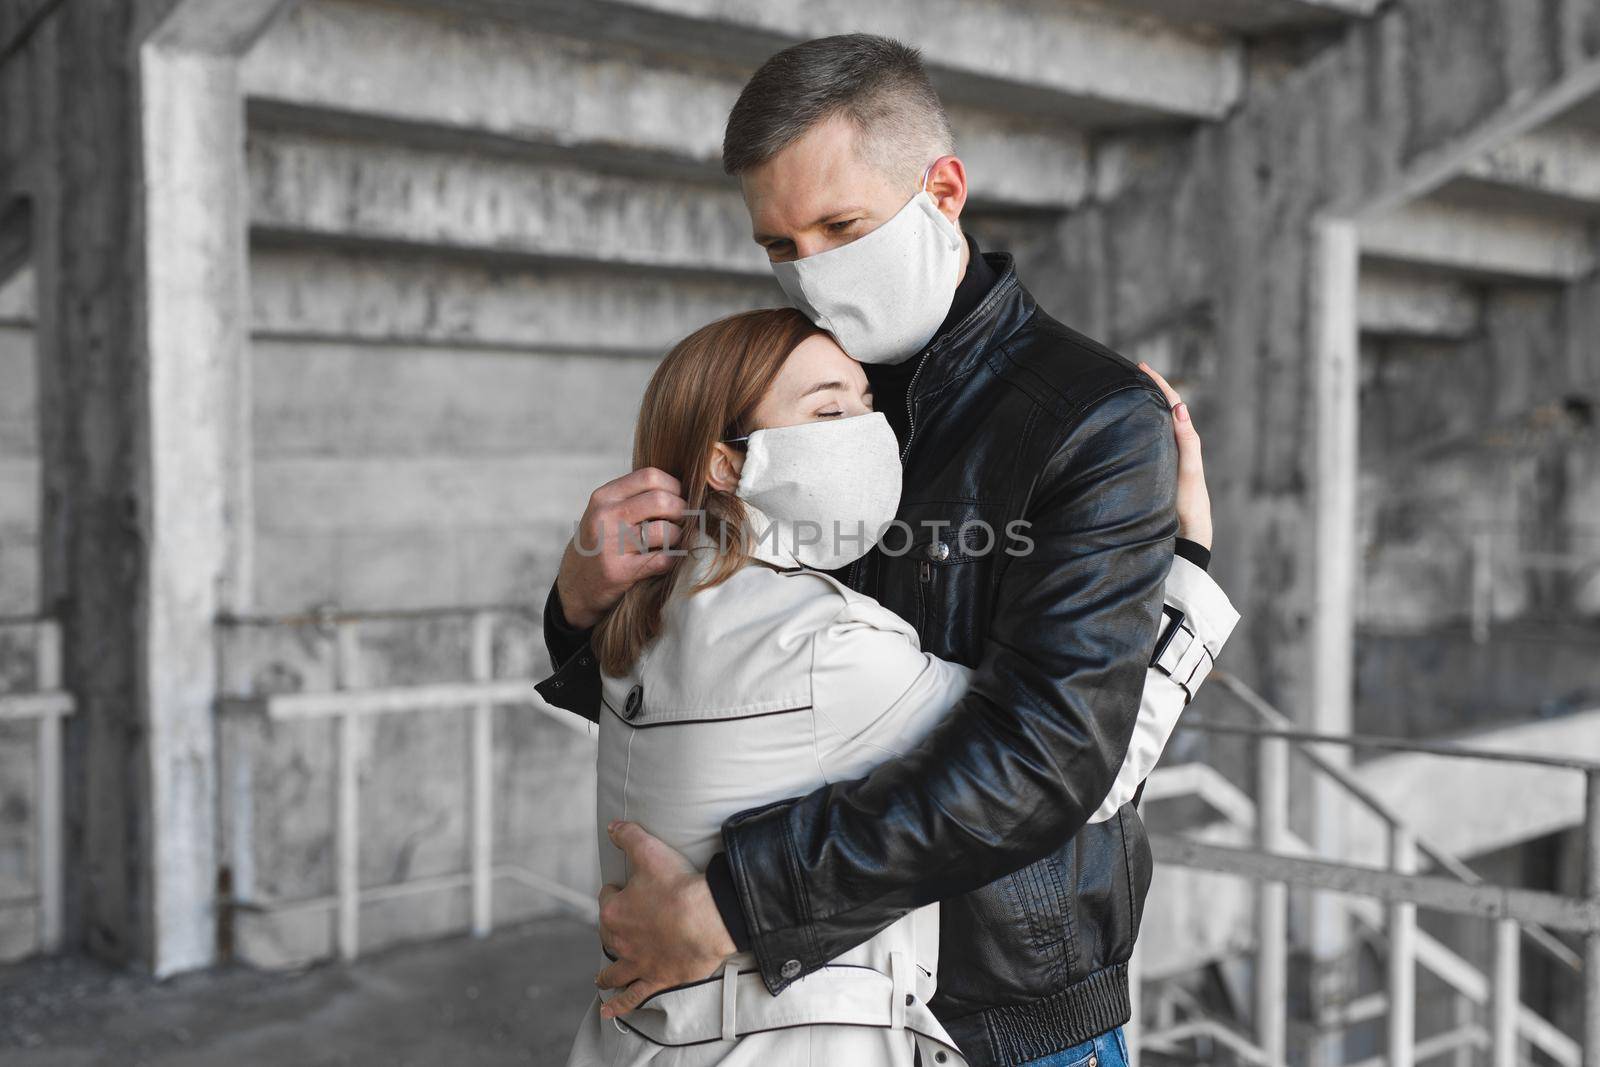 Masked man and woman embrace. Coronavirus. Covid19.